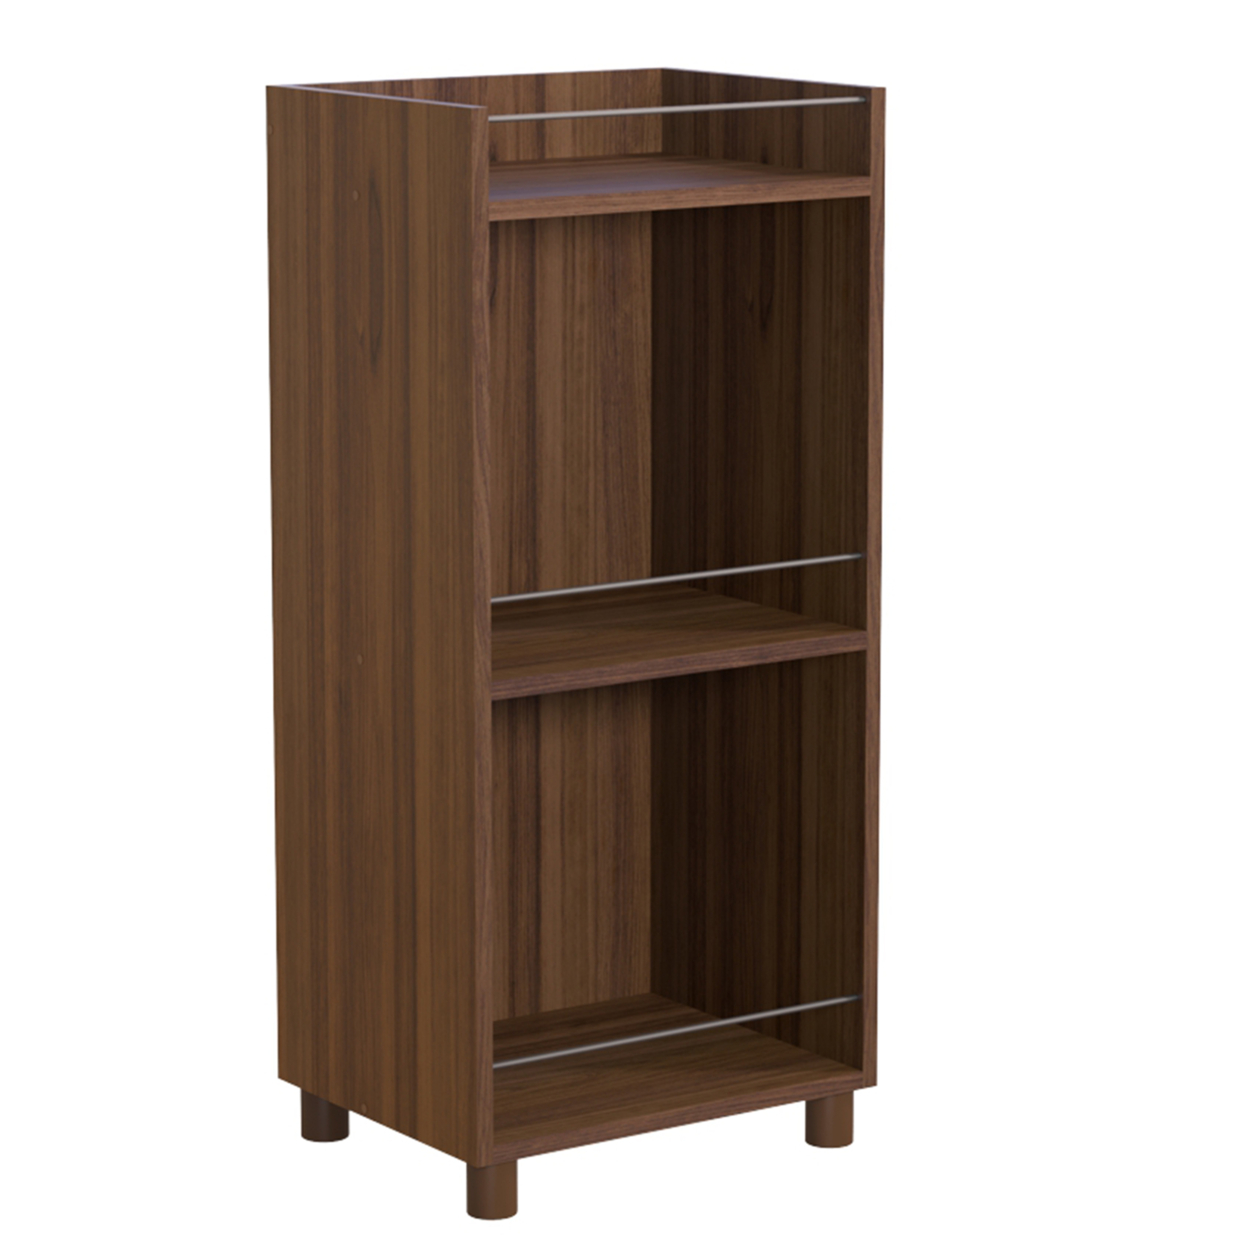 34 Inch 3 Tier Wooden Curio Cabinet with Grain Details, Dark Brown, Saltoro Sherpi